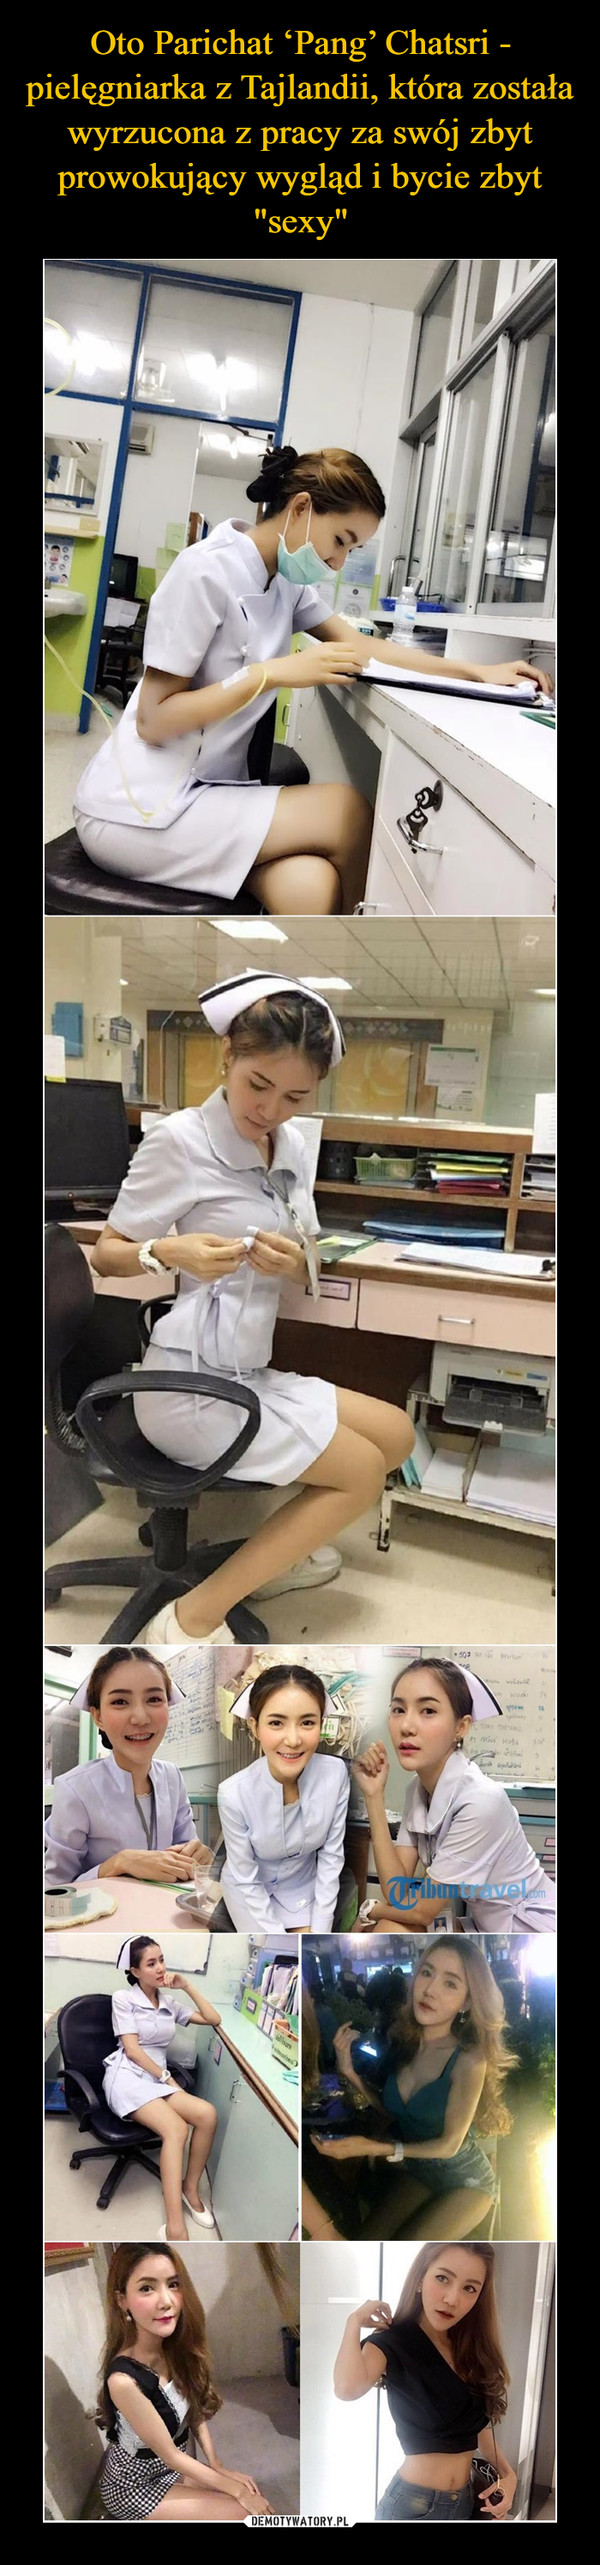 Oto Parichat ‘Pang’ Chatsri - pielęgniarka z Tajlandii, która została wyrzucona z pracy za swój zbyt prowokujący wygląd i bycie zbyt "sexy"